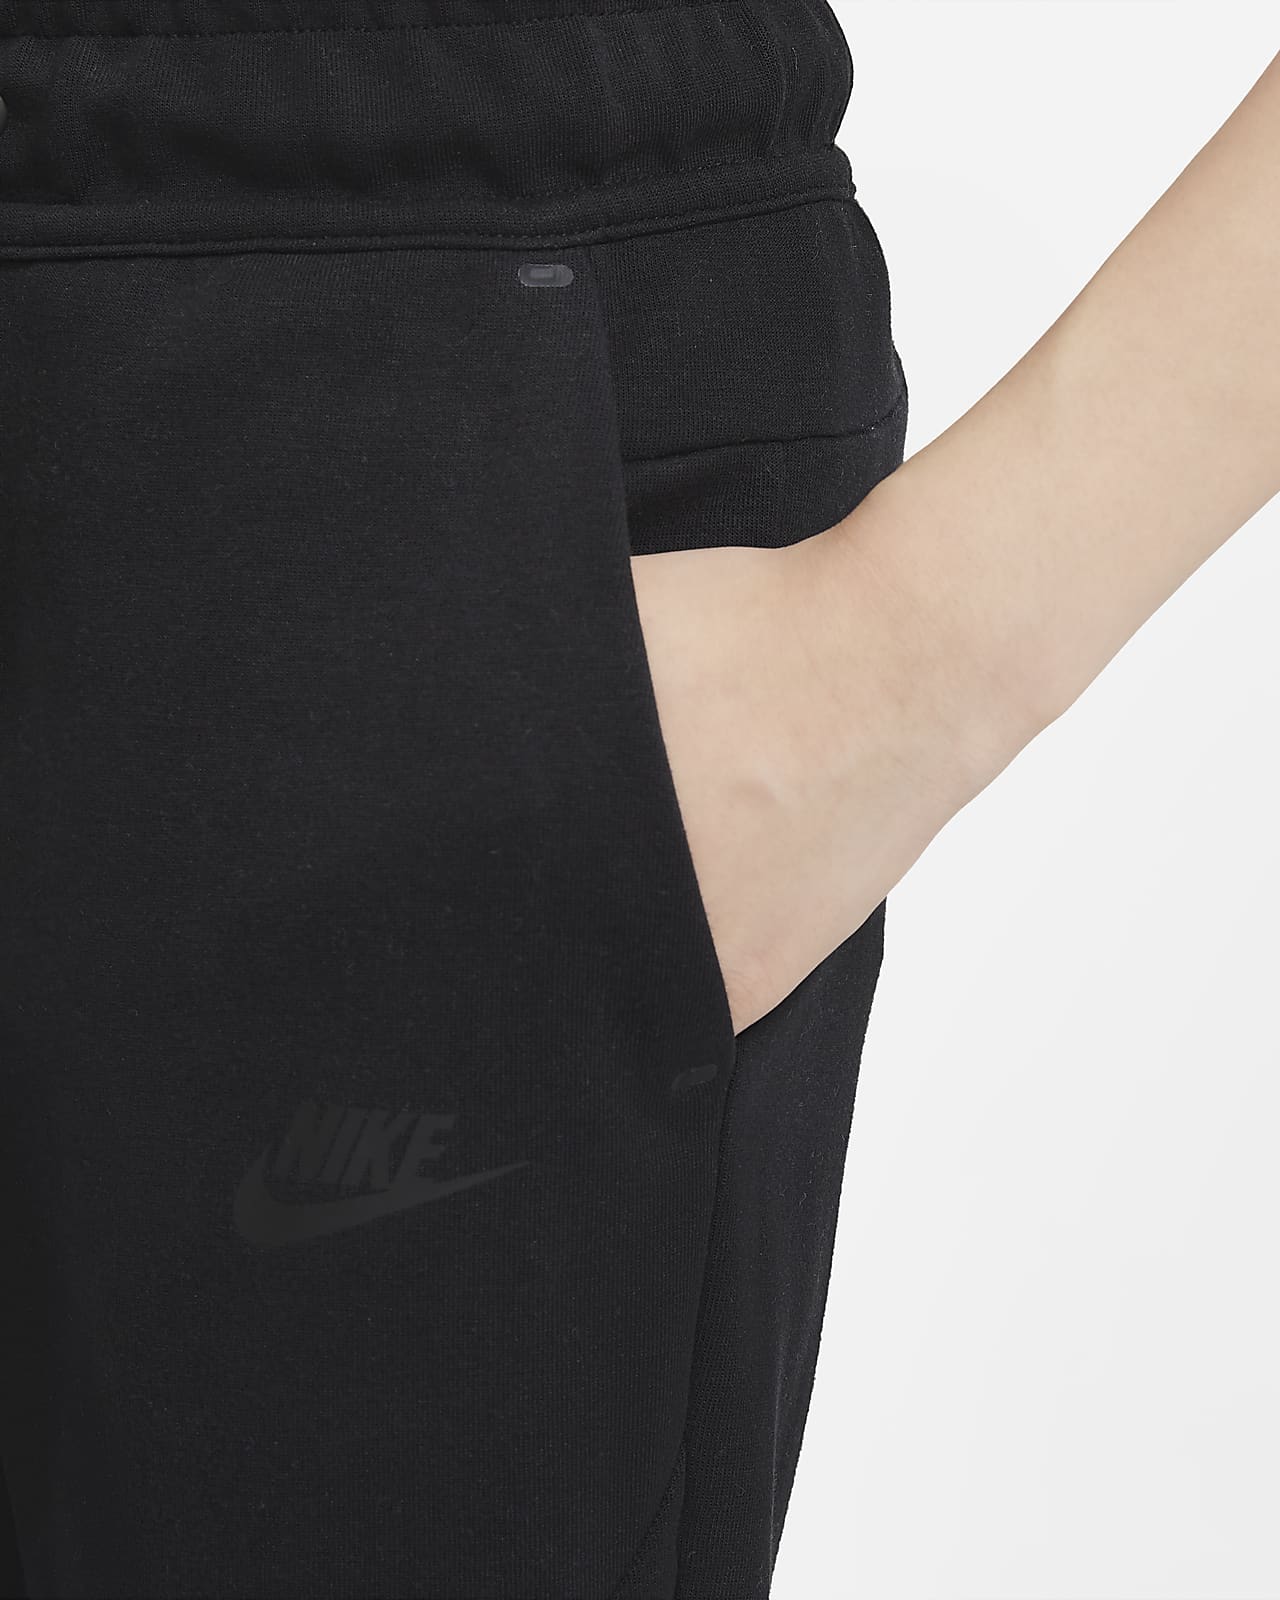 Nike Kids Boys TECH Fleece Pants 804818-017 Size XS Black/White :  : Clothing & Accessories